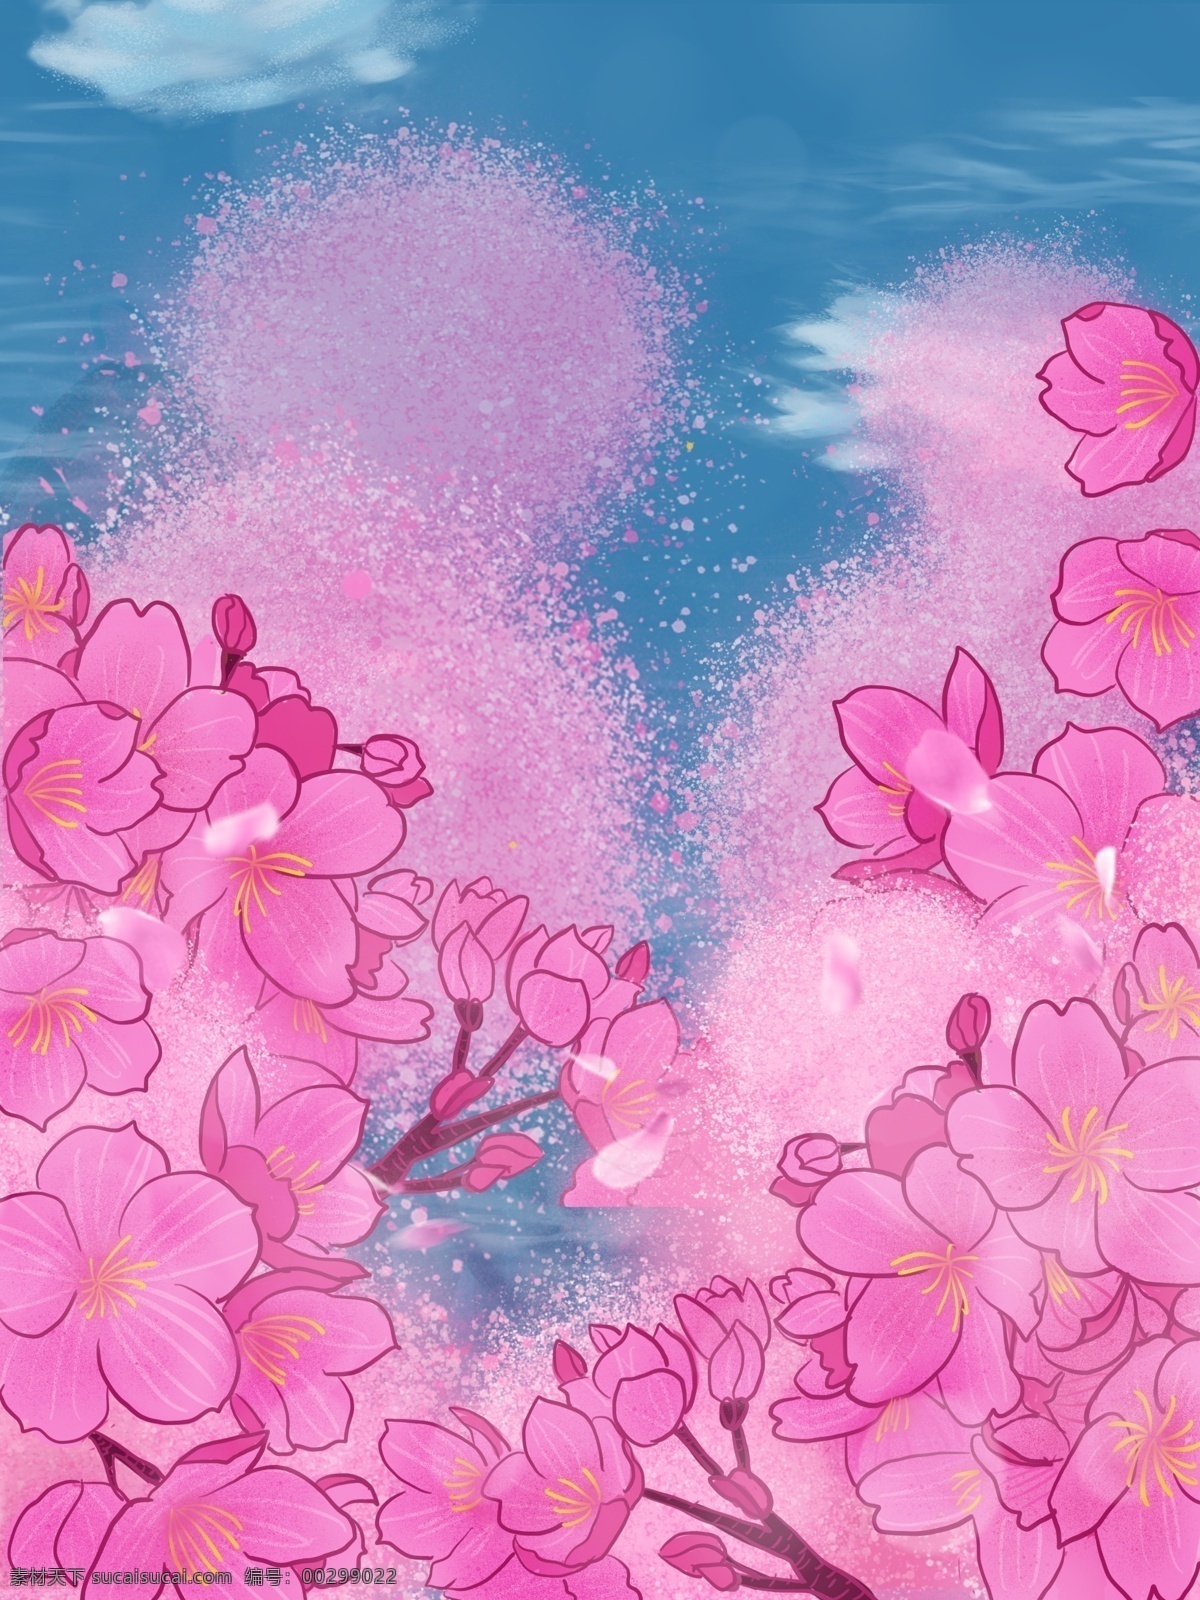 浪漫 花卉 植物 插画 背景 粉色 花卉背景 小清新背景 植物背景 植物花卉 水彩背景 通用背景